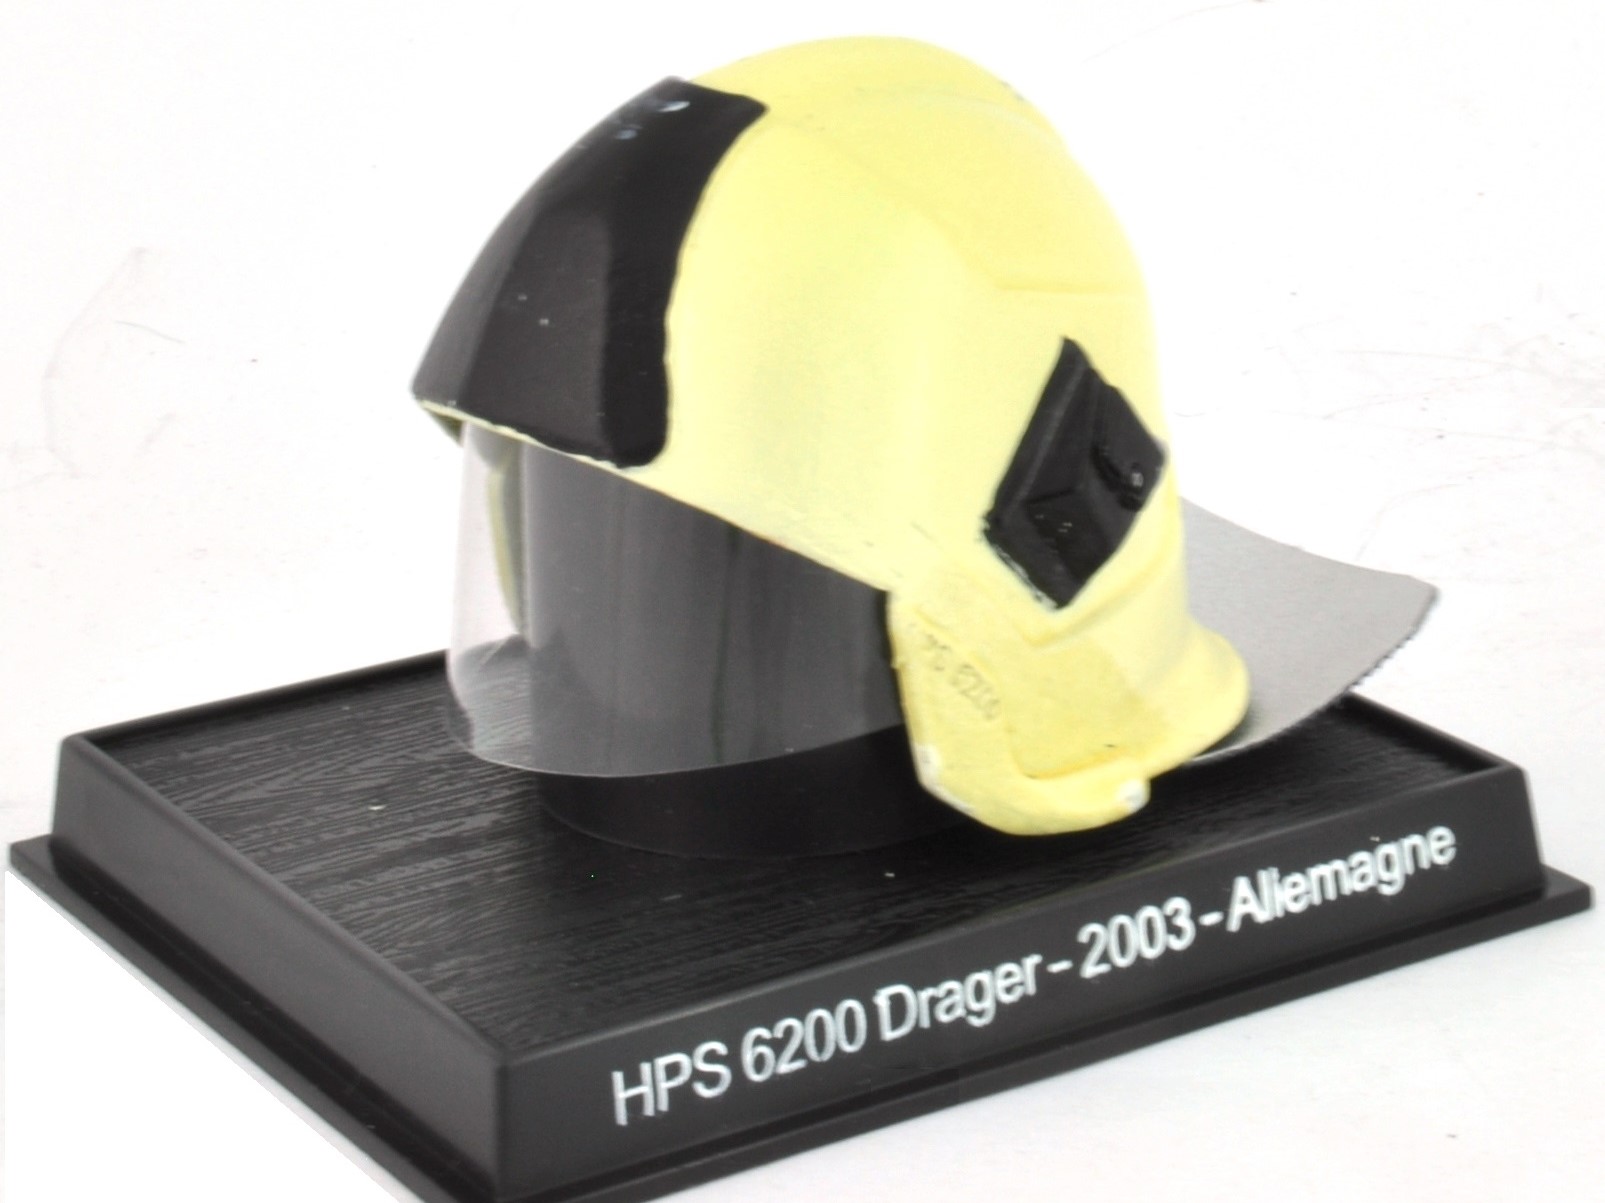 HPS 6200 Drager - 2003 - Allemagne